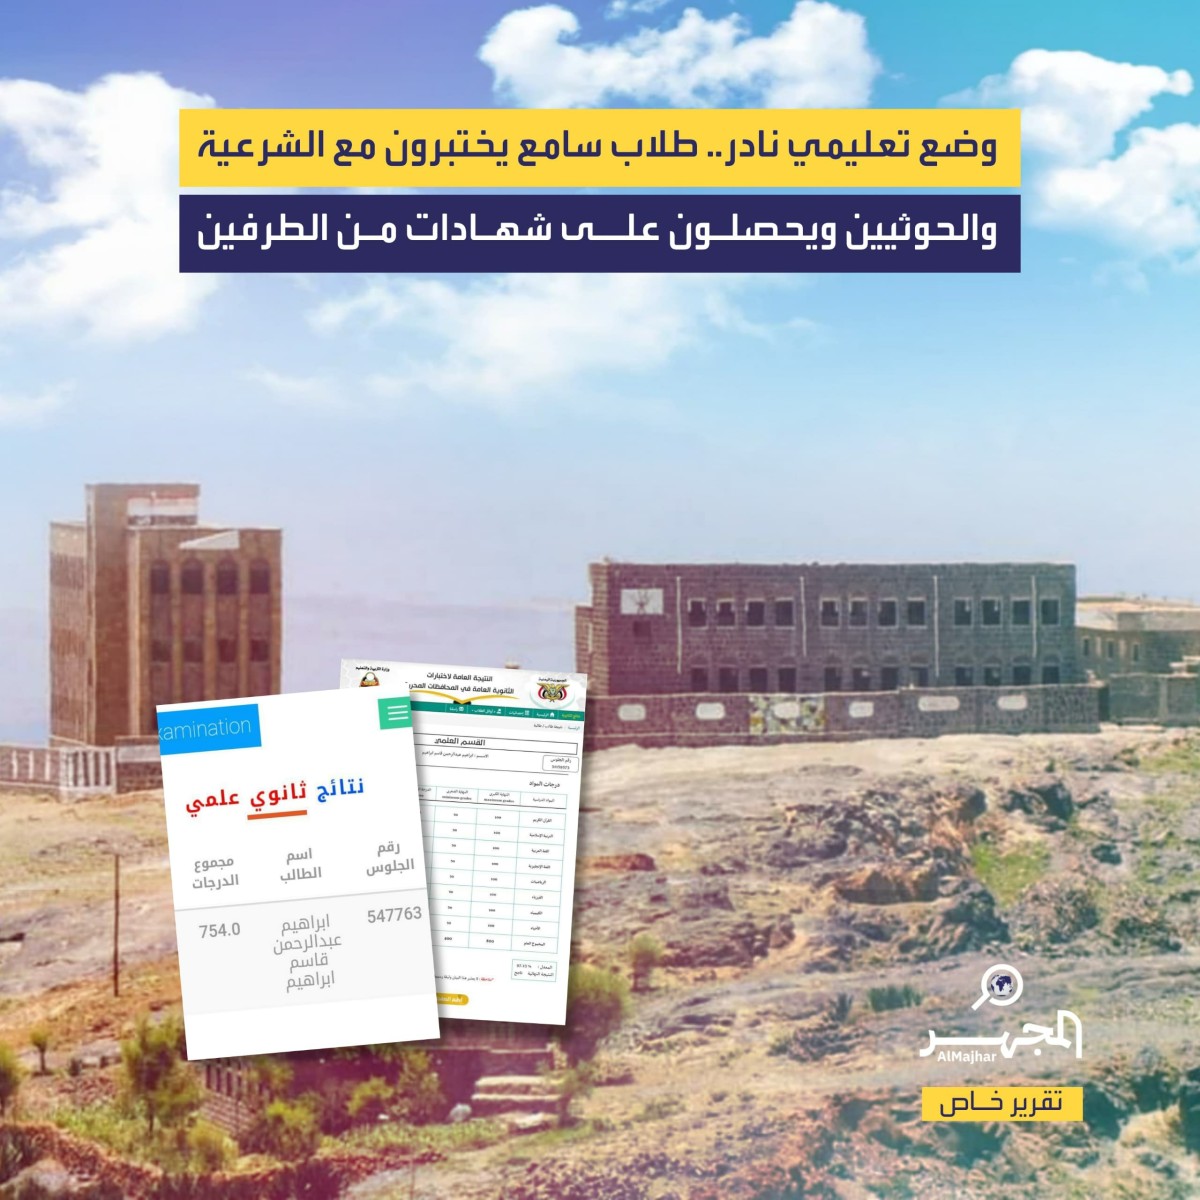 وضع تعليمي نادر.. طلاب سامع يختبرون مع الشرعية والحوثيين ويحصلون على شهادات من الطرفين (تقرير خاص)